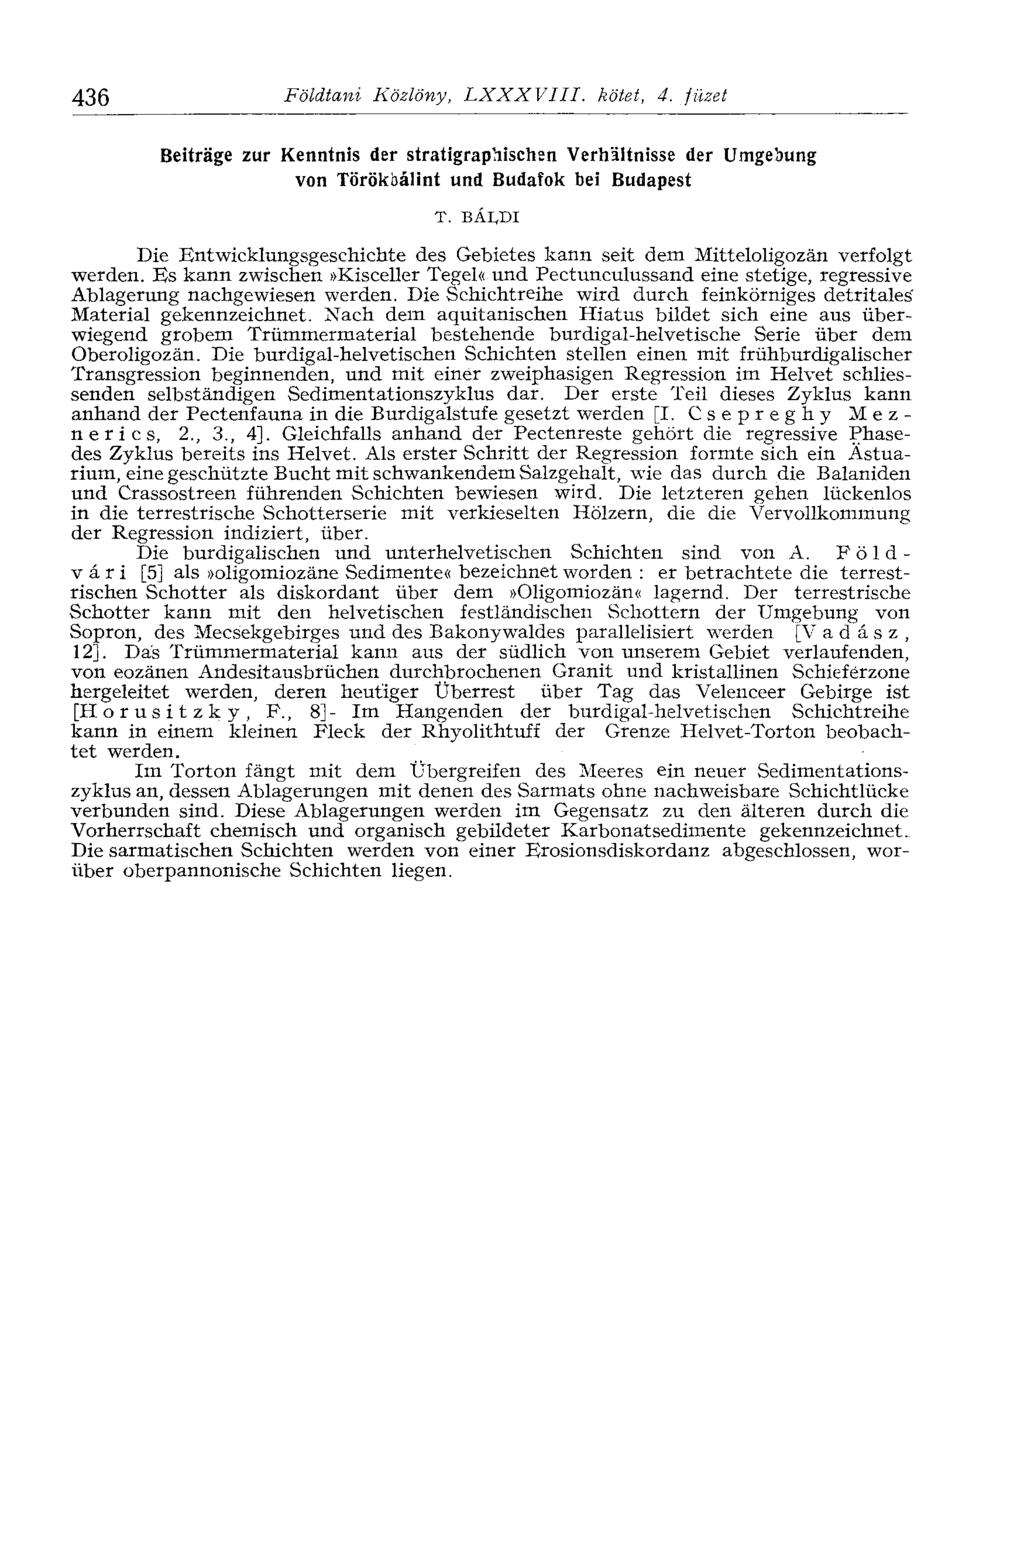 436 Földtani Közlöny, LXXXVIII. kötet, 4. füzet Beiträge zur Kenntnis der stratigraphischen Verhältnisse der Umgebung von Törökbálint und Budafok bei Т.